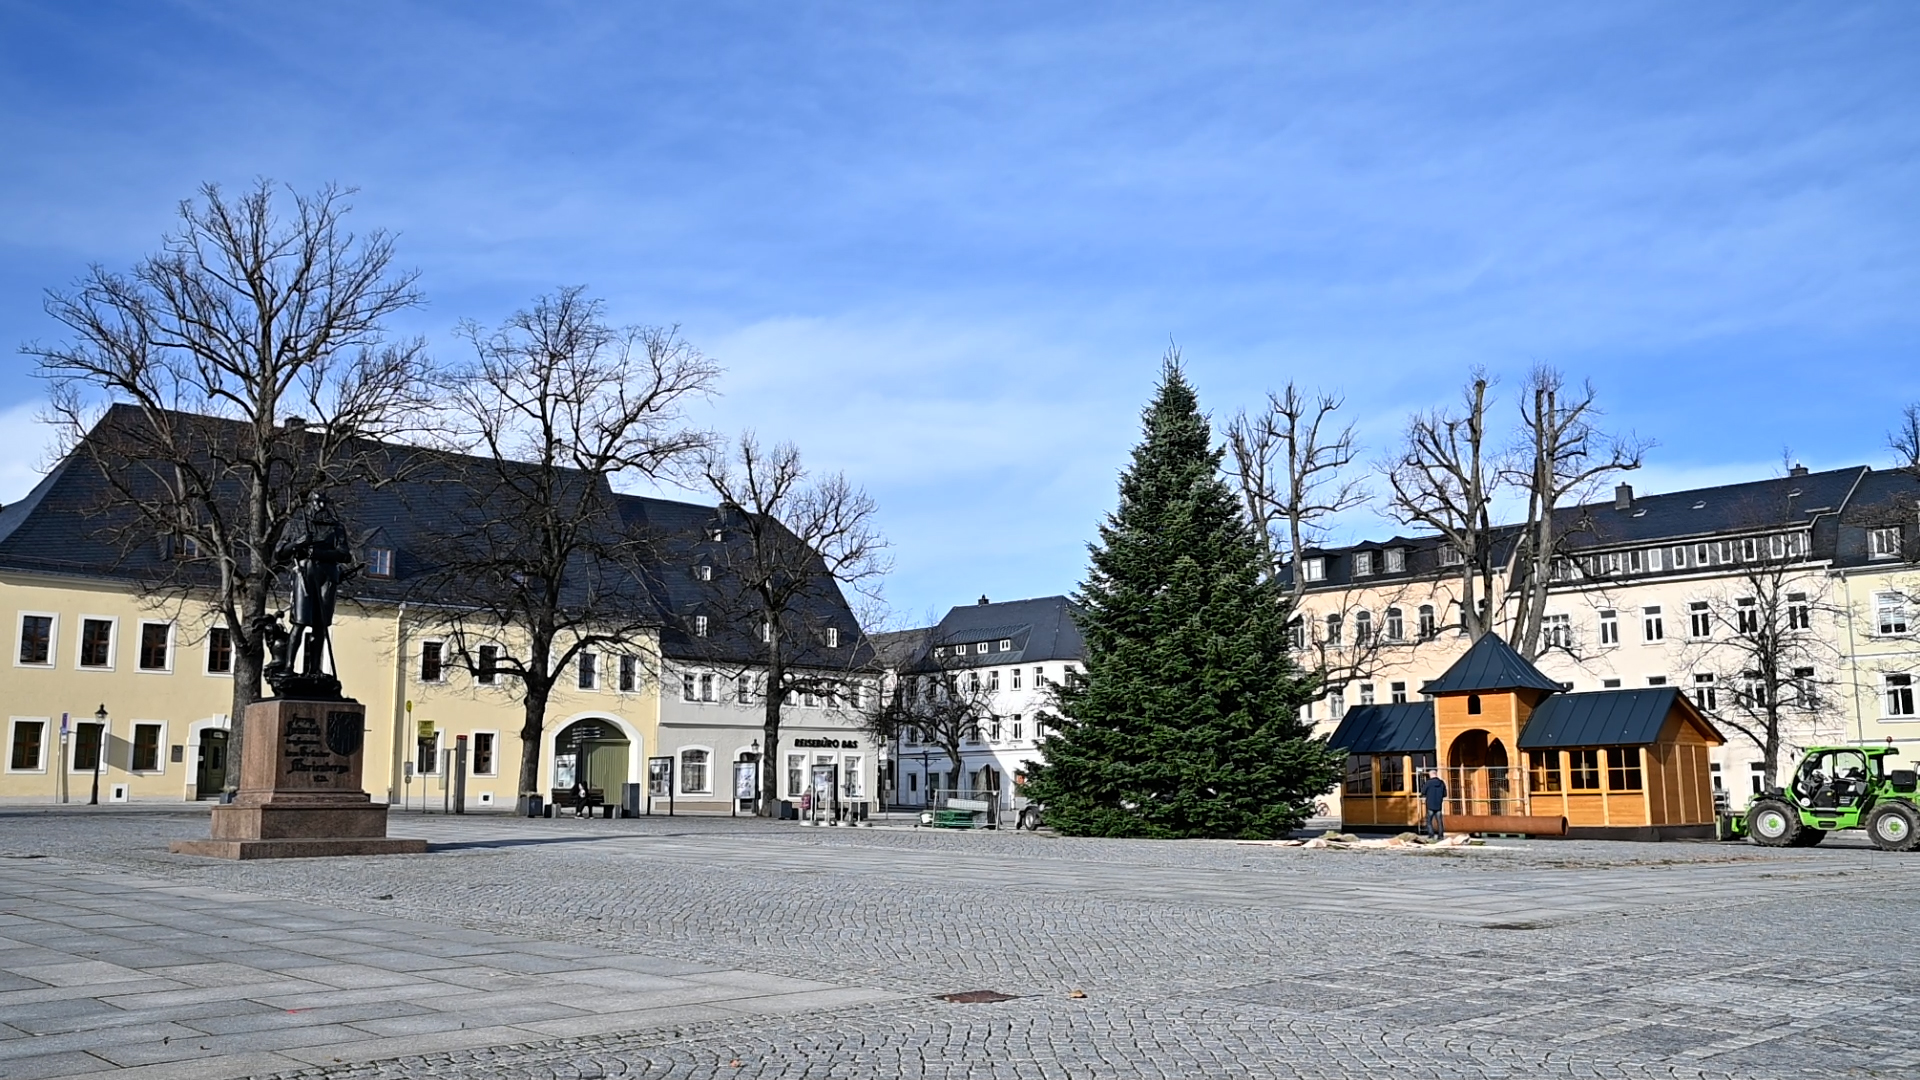 MEgional am 5. November 2021 mit Infos zum Weihnachtsbaum in Marienberg